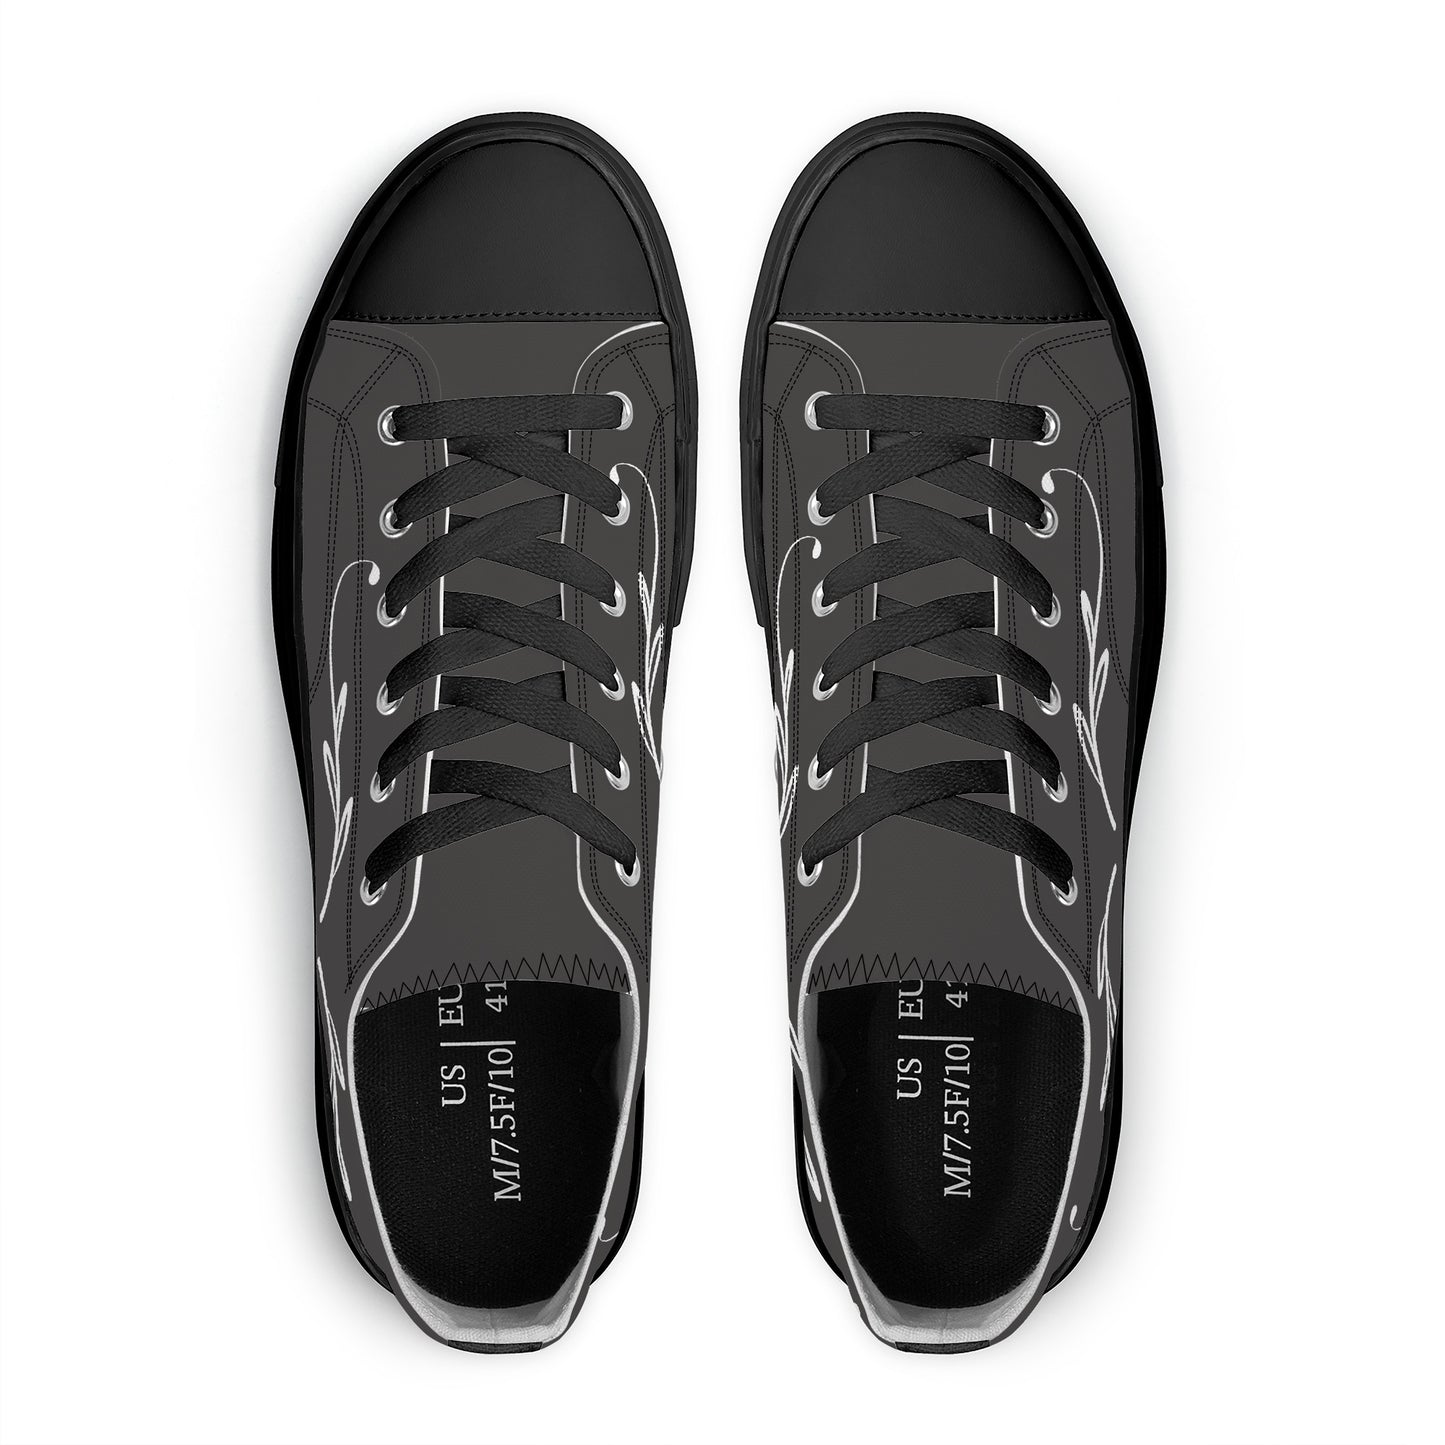 Unisex Classic Low Top Canvas Shoes - Black